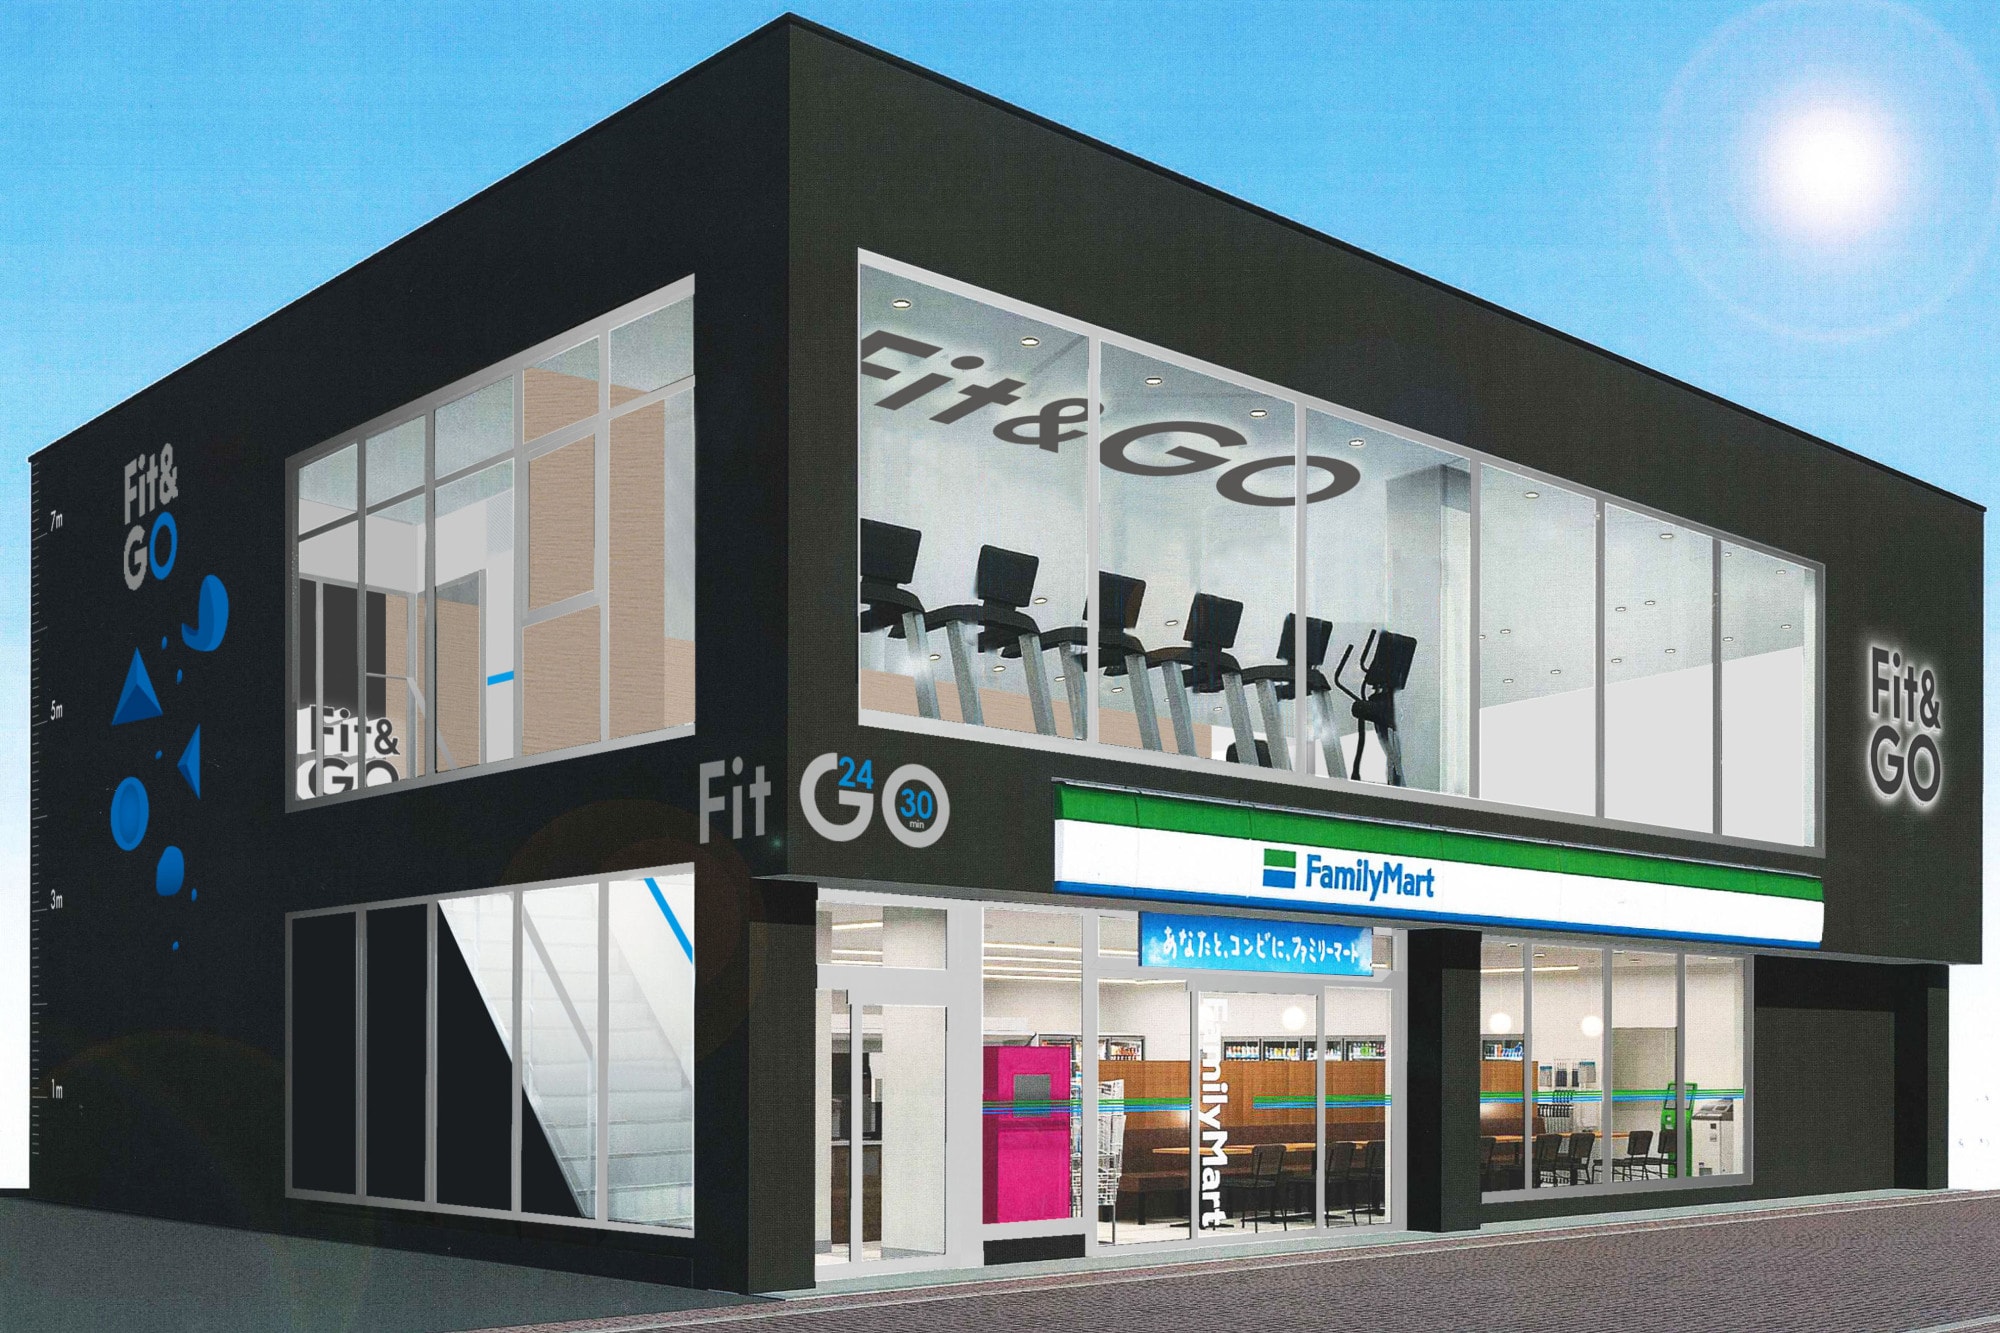 日本 Family Mart 最新連鎖健身室 Fit & GO 即將開業